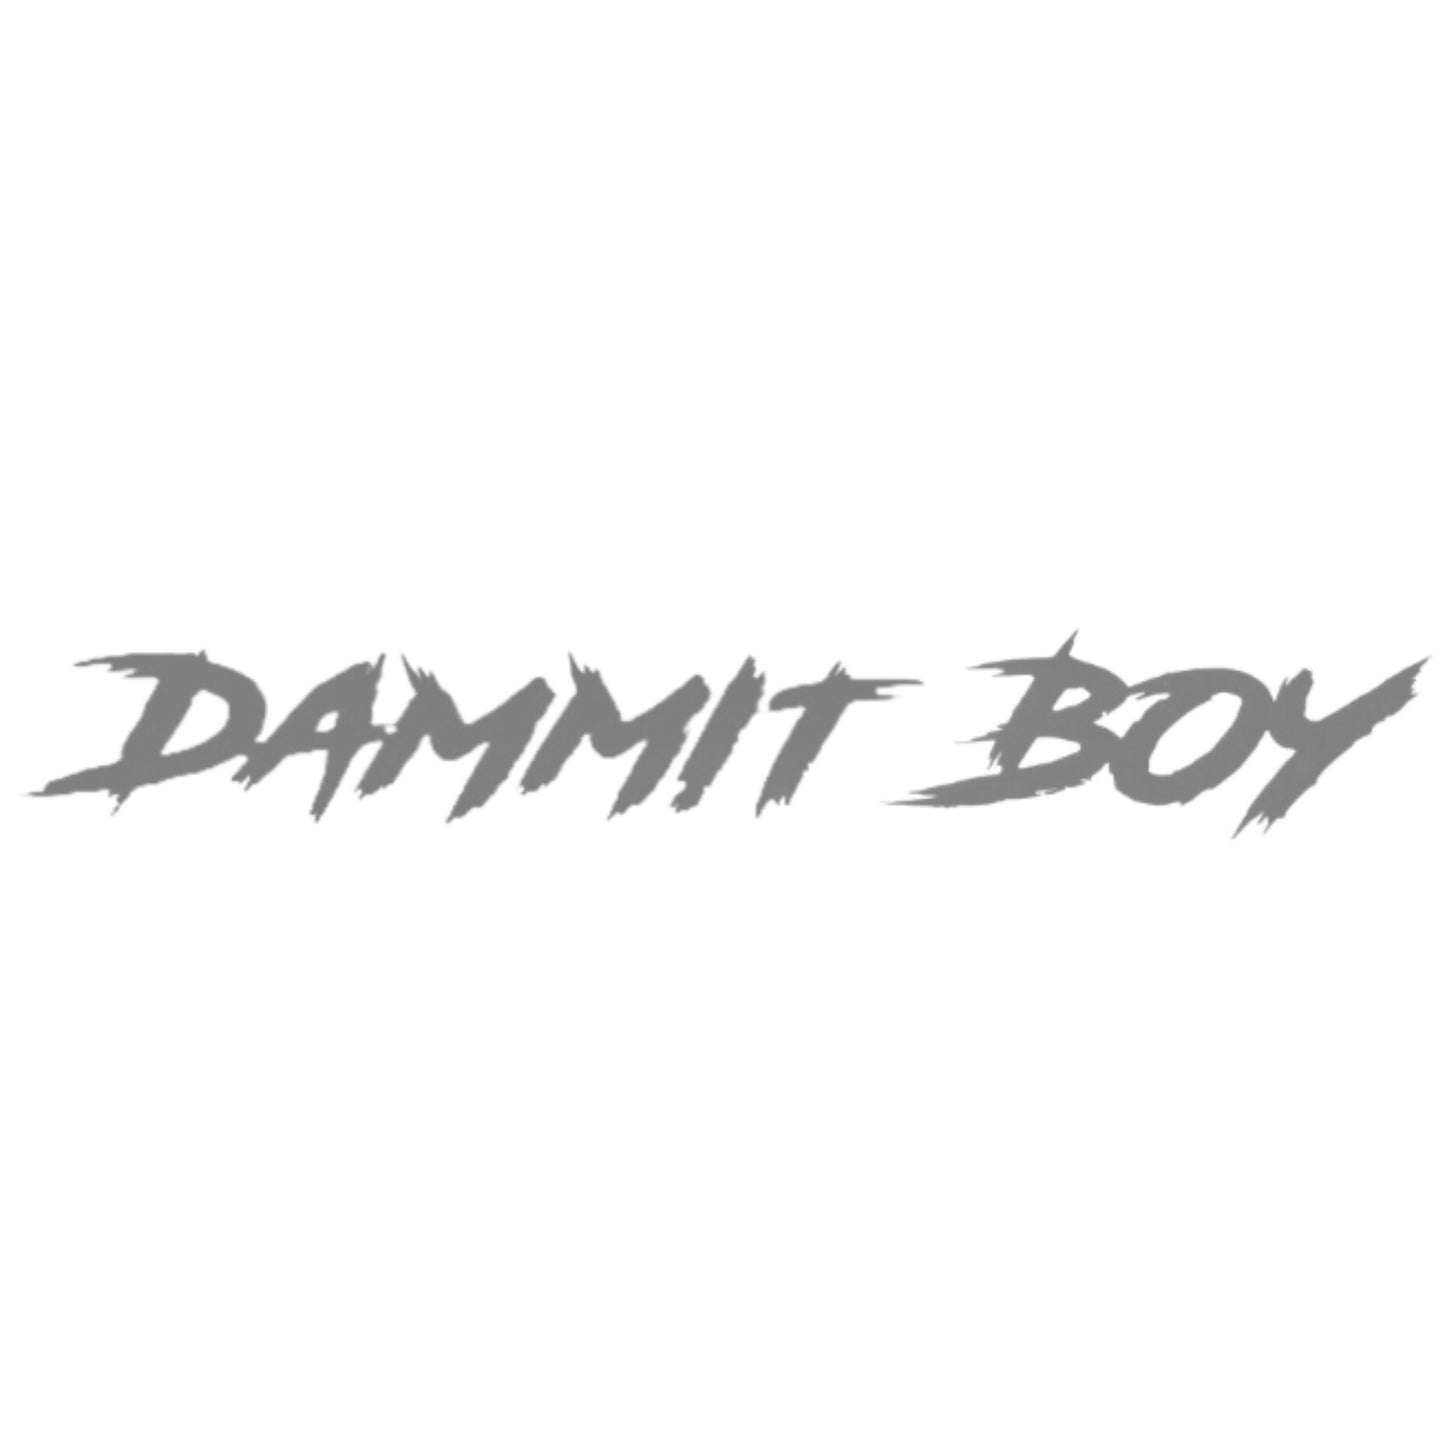 "DAMMIT BOY" WINDSHIELD DECAL